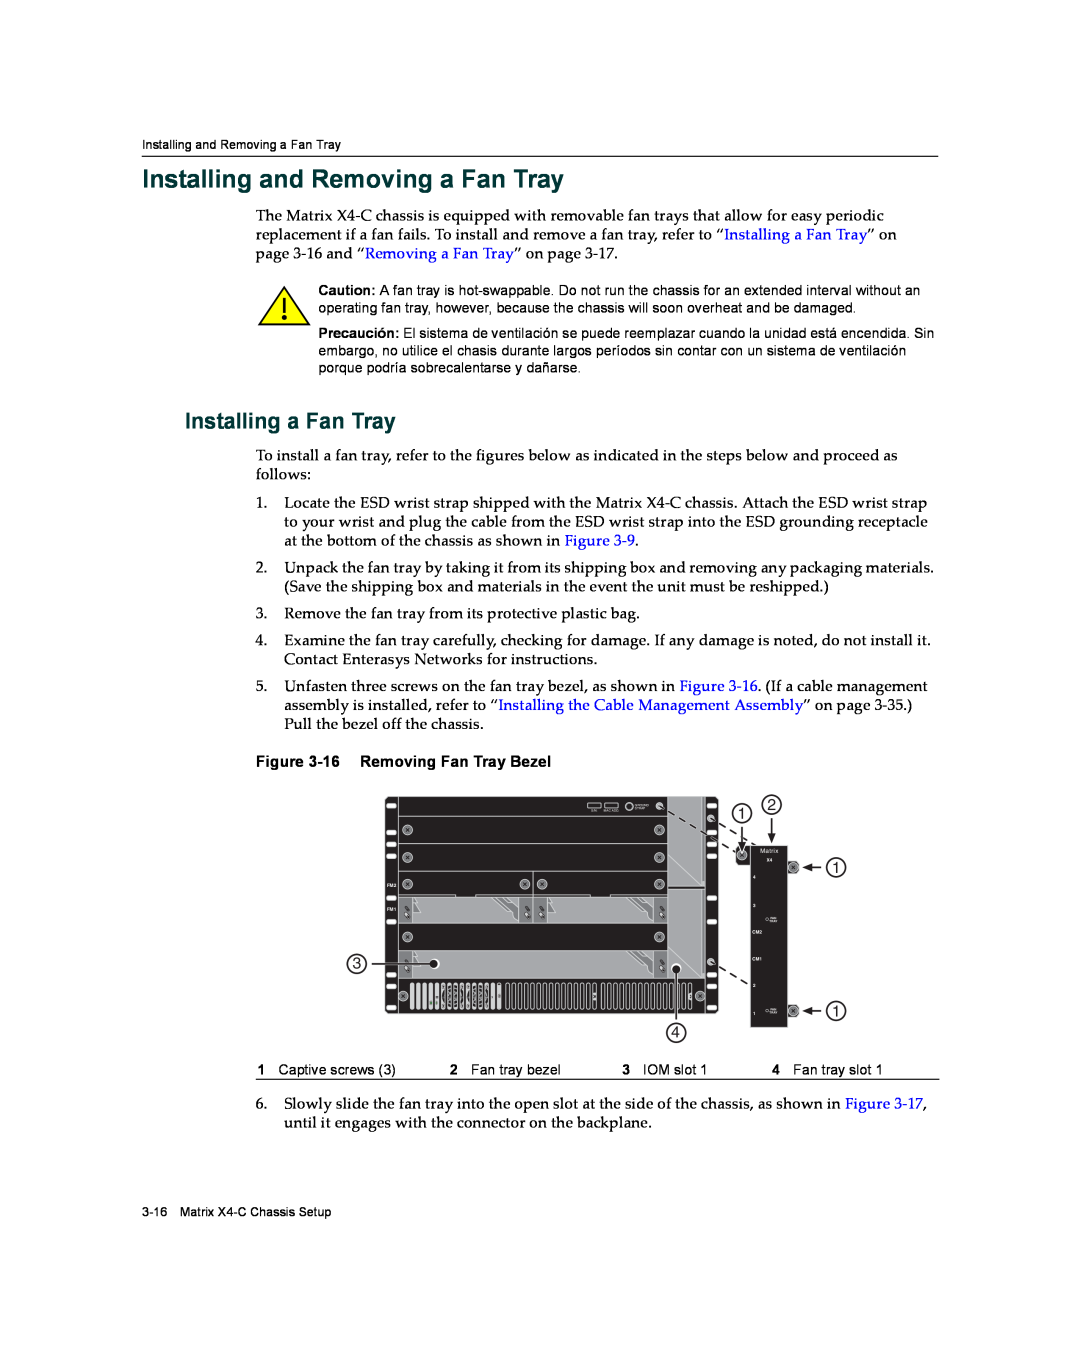 Enterasys Networks X009-U manual Installing and Removing a Fan Tray, Installing a Fan Tray, 16 Removing Fan Tray Bezel 